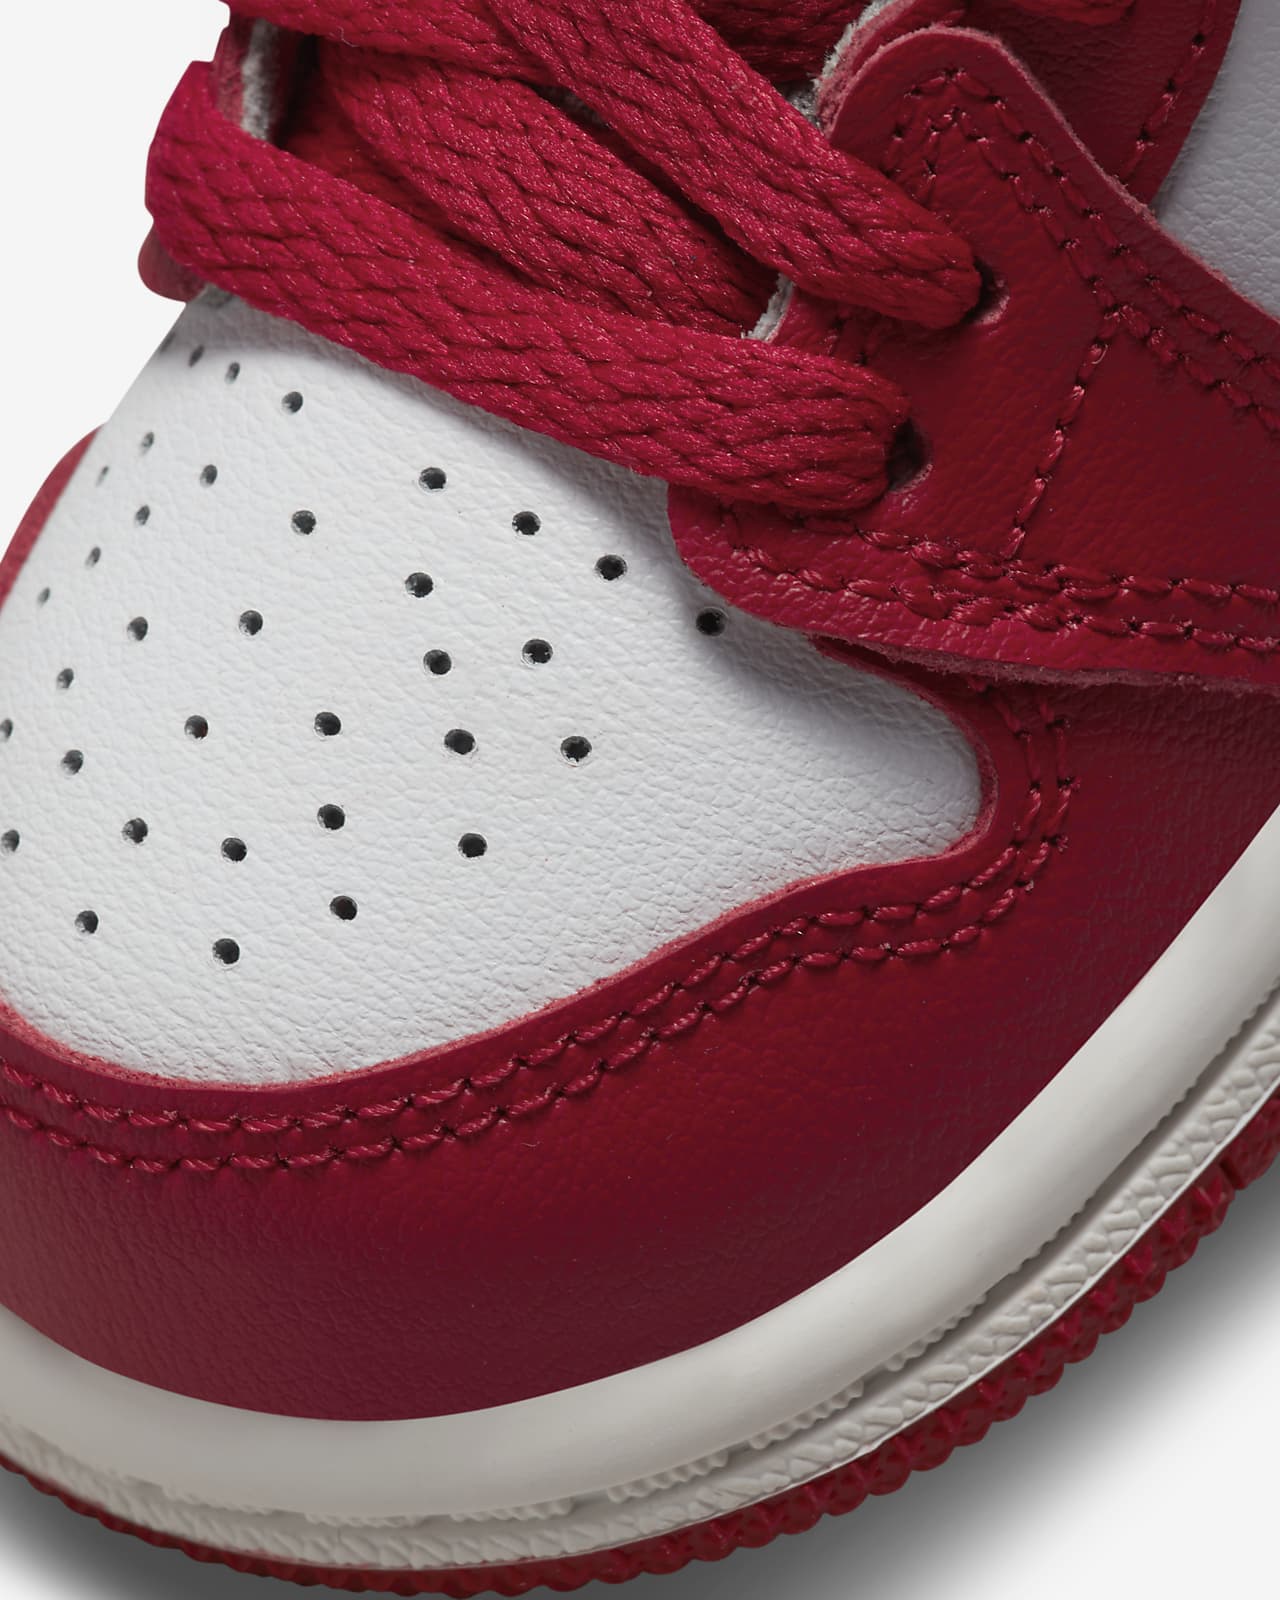 Go for a walk item Ours Jordan 1 High OG Baby/Toddler Shoes. Nike.com